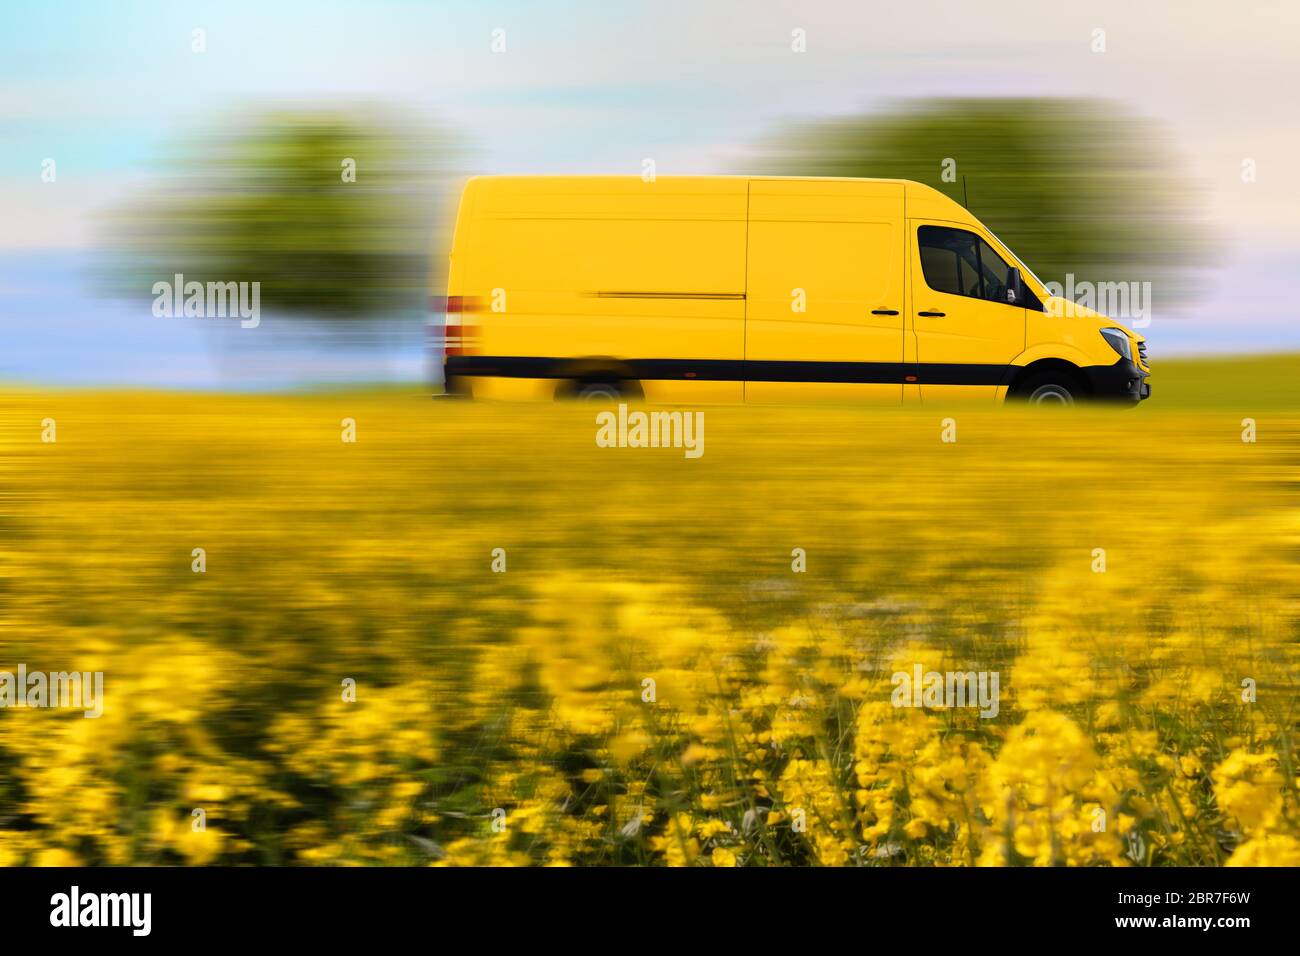 Envío rápido de paquetes, furgoneta amarilla en carretera. Schnelle Paketzustellung, gelber Postwagen auf einer Landstraße. Foto de stock